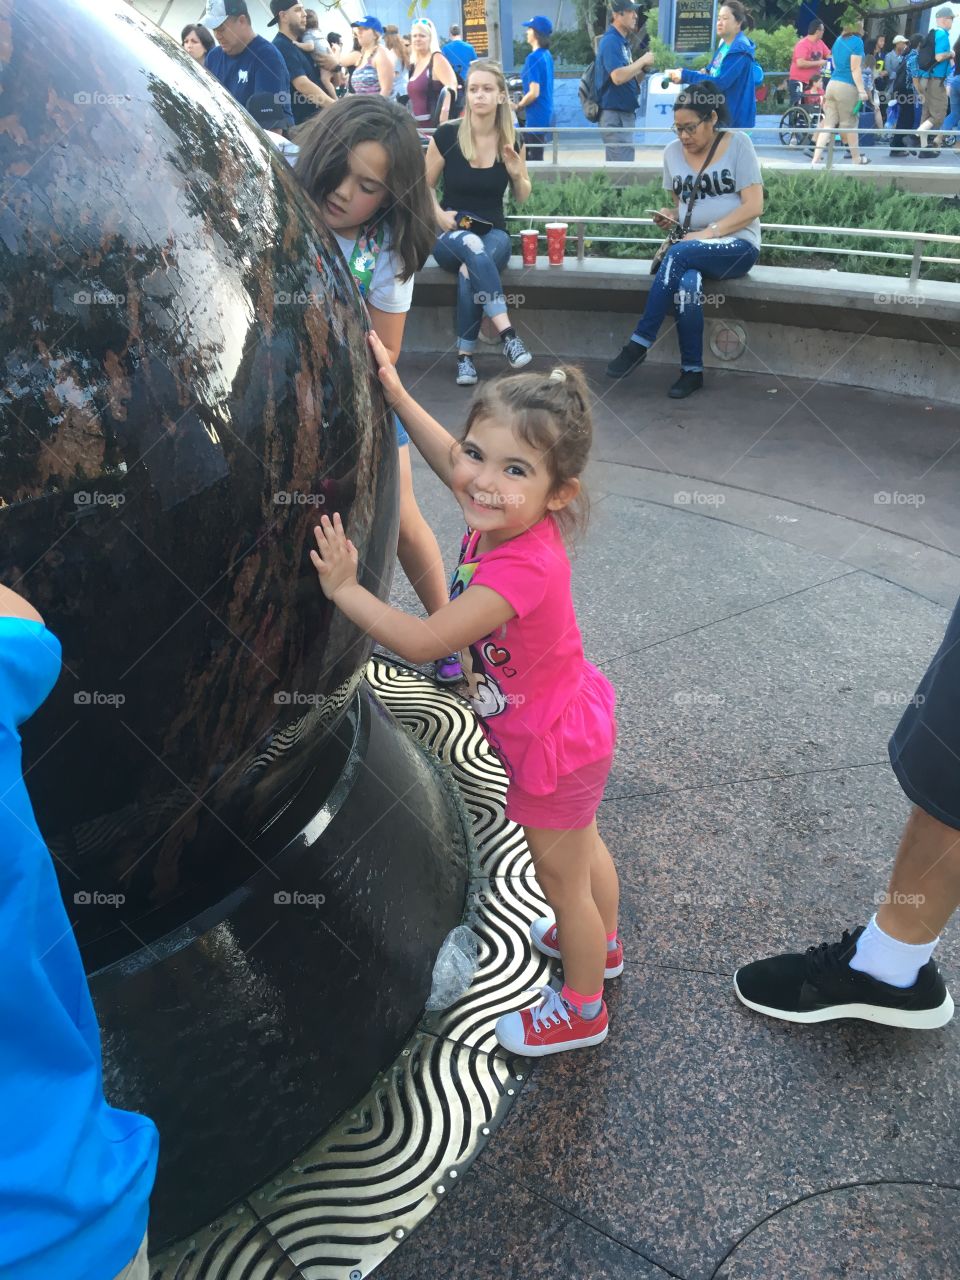 My daughter at Disneyland 